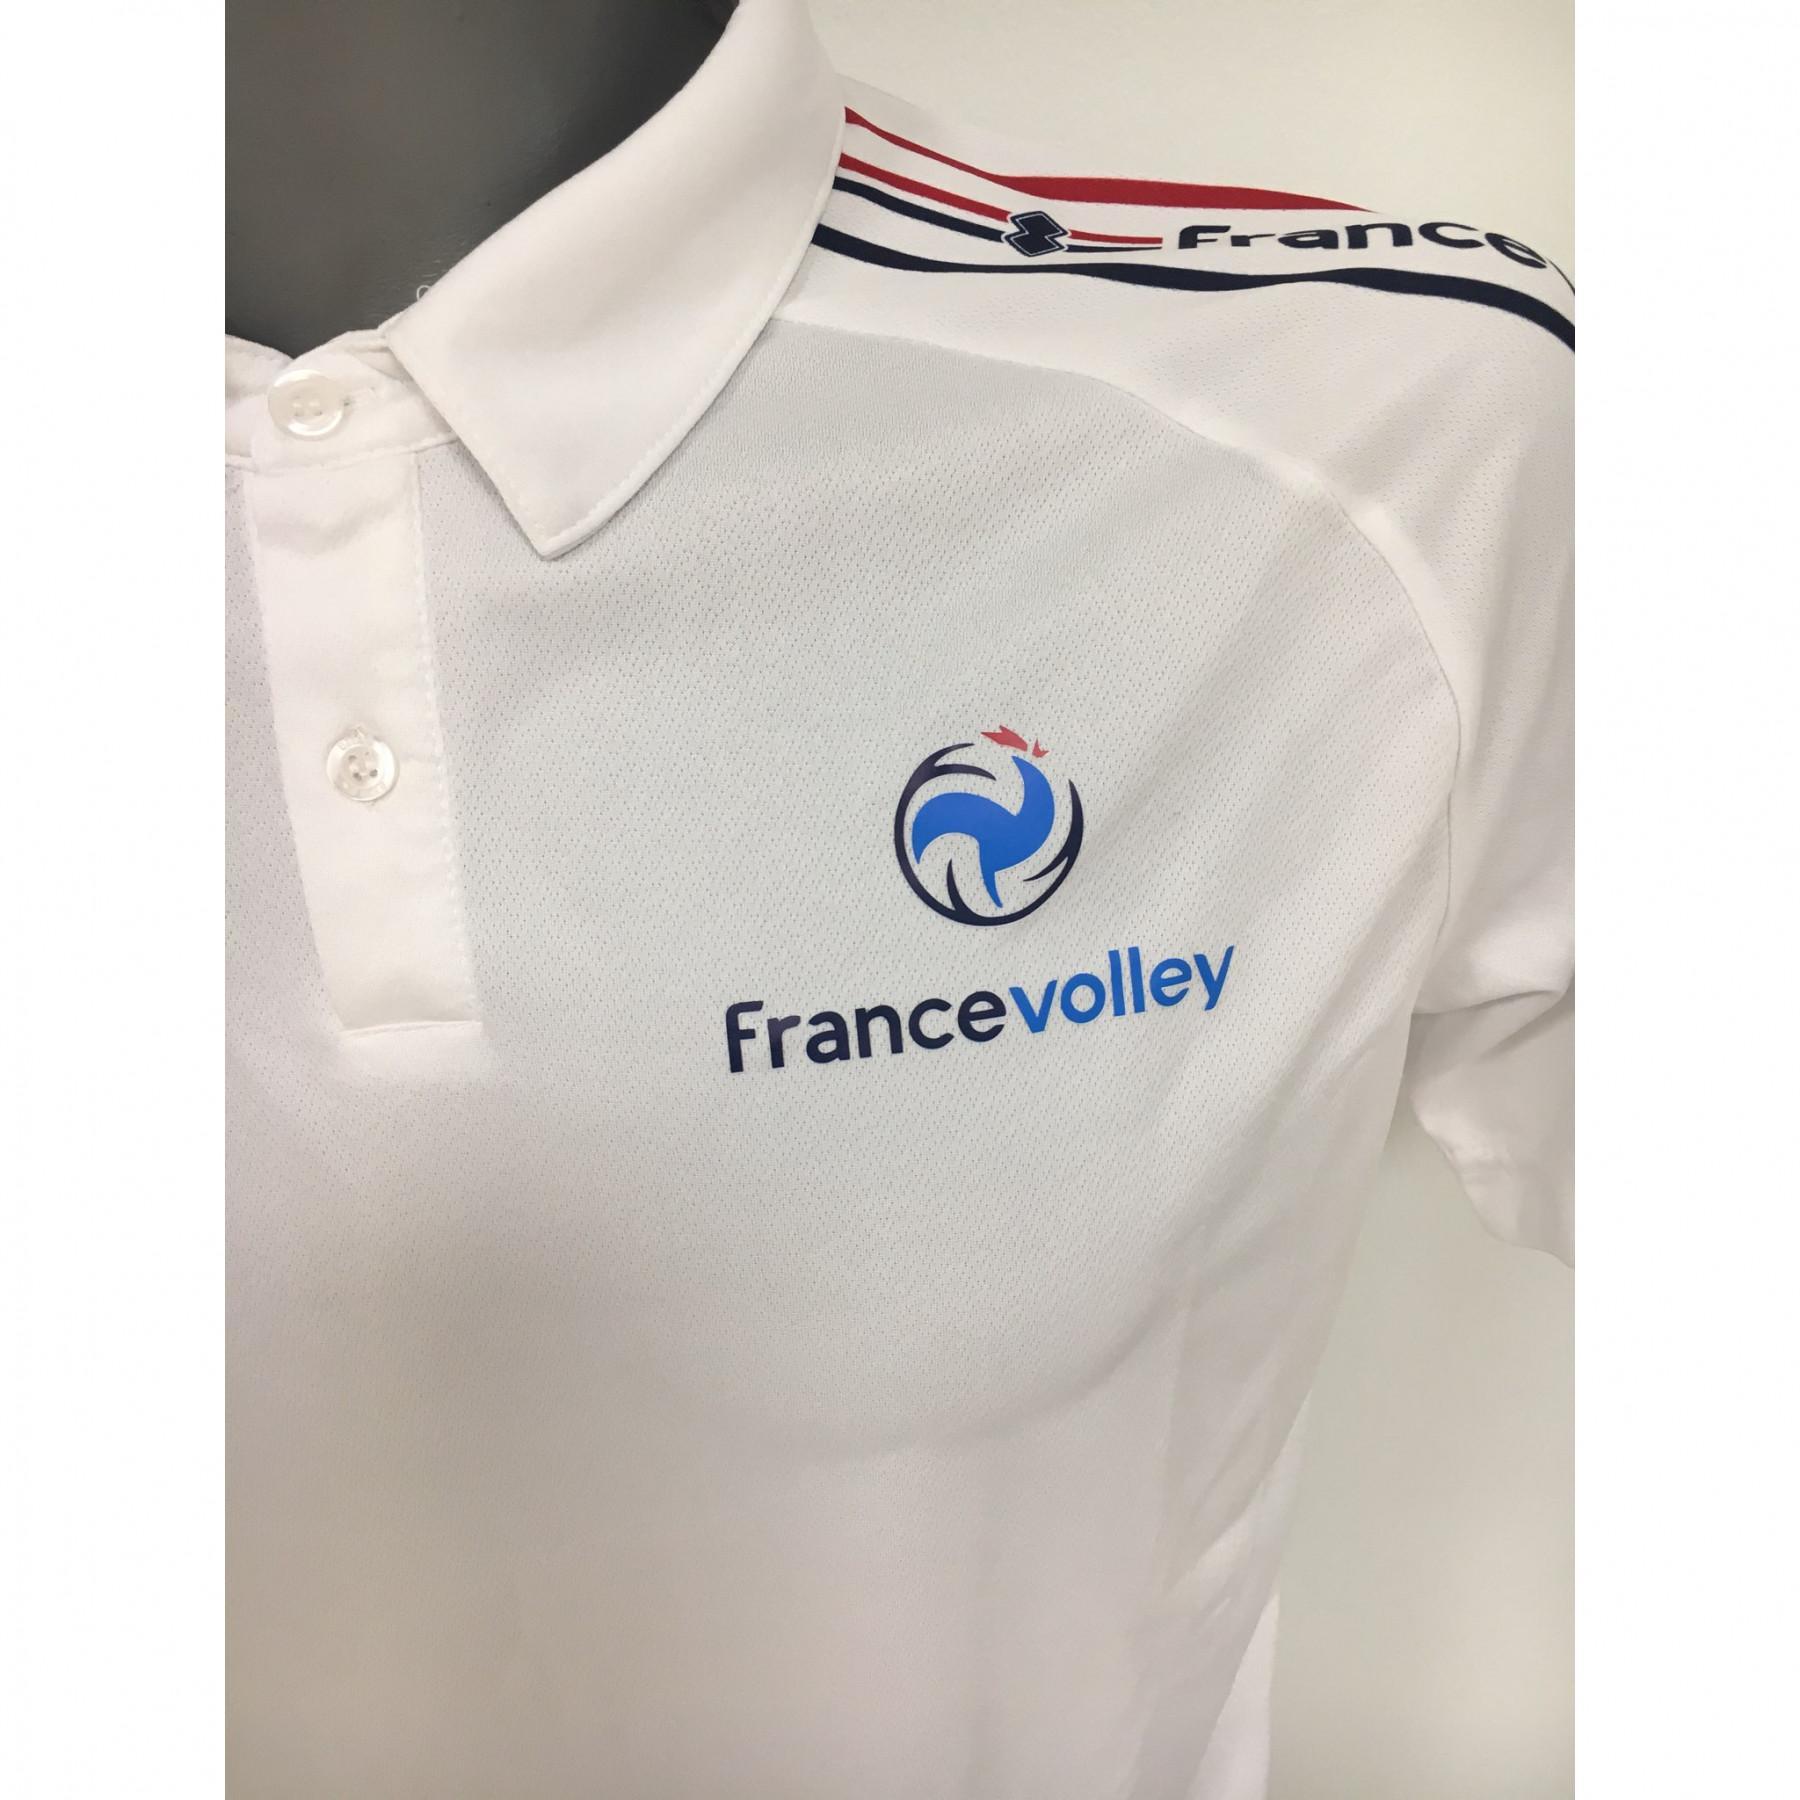 Polo shedir team of France 2020